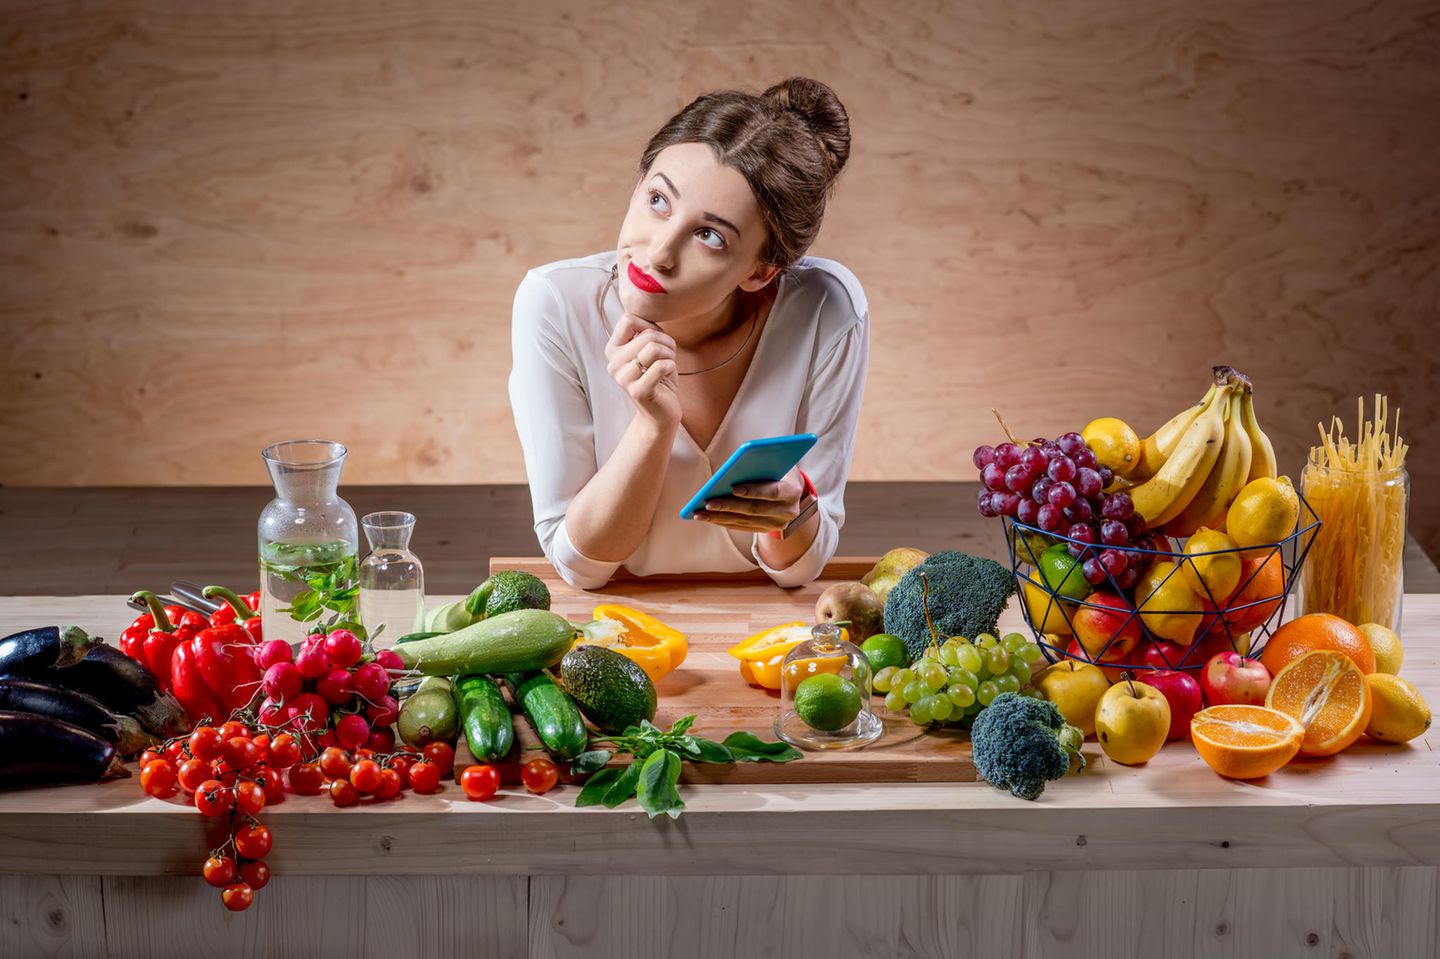 femeie care se gandeste cu telefonul in mana si este inconjurata de multe fructe si legume